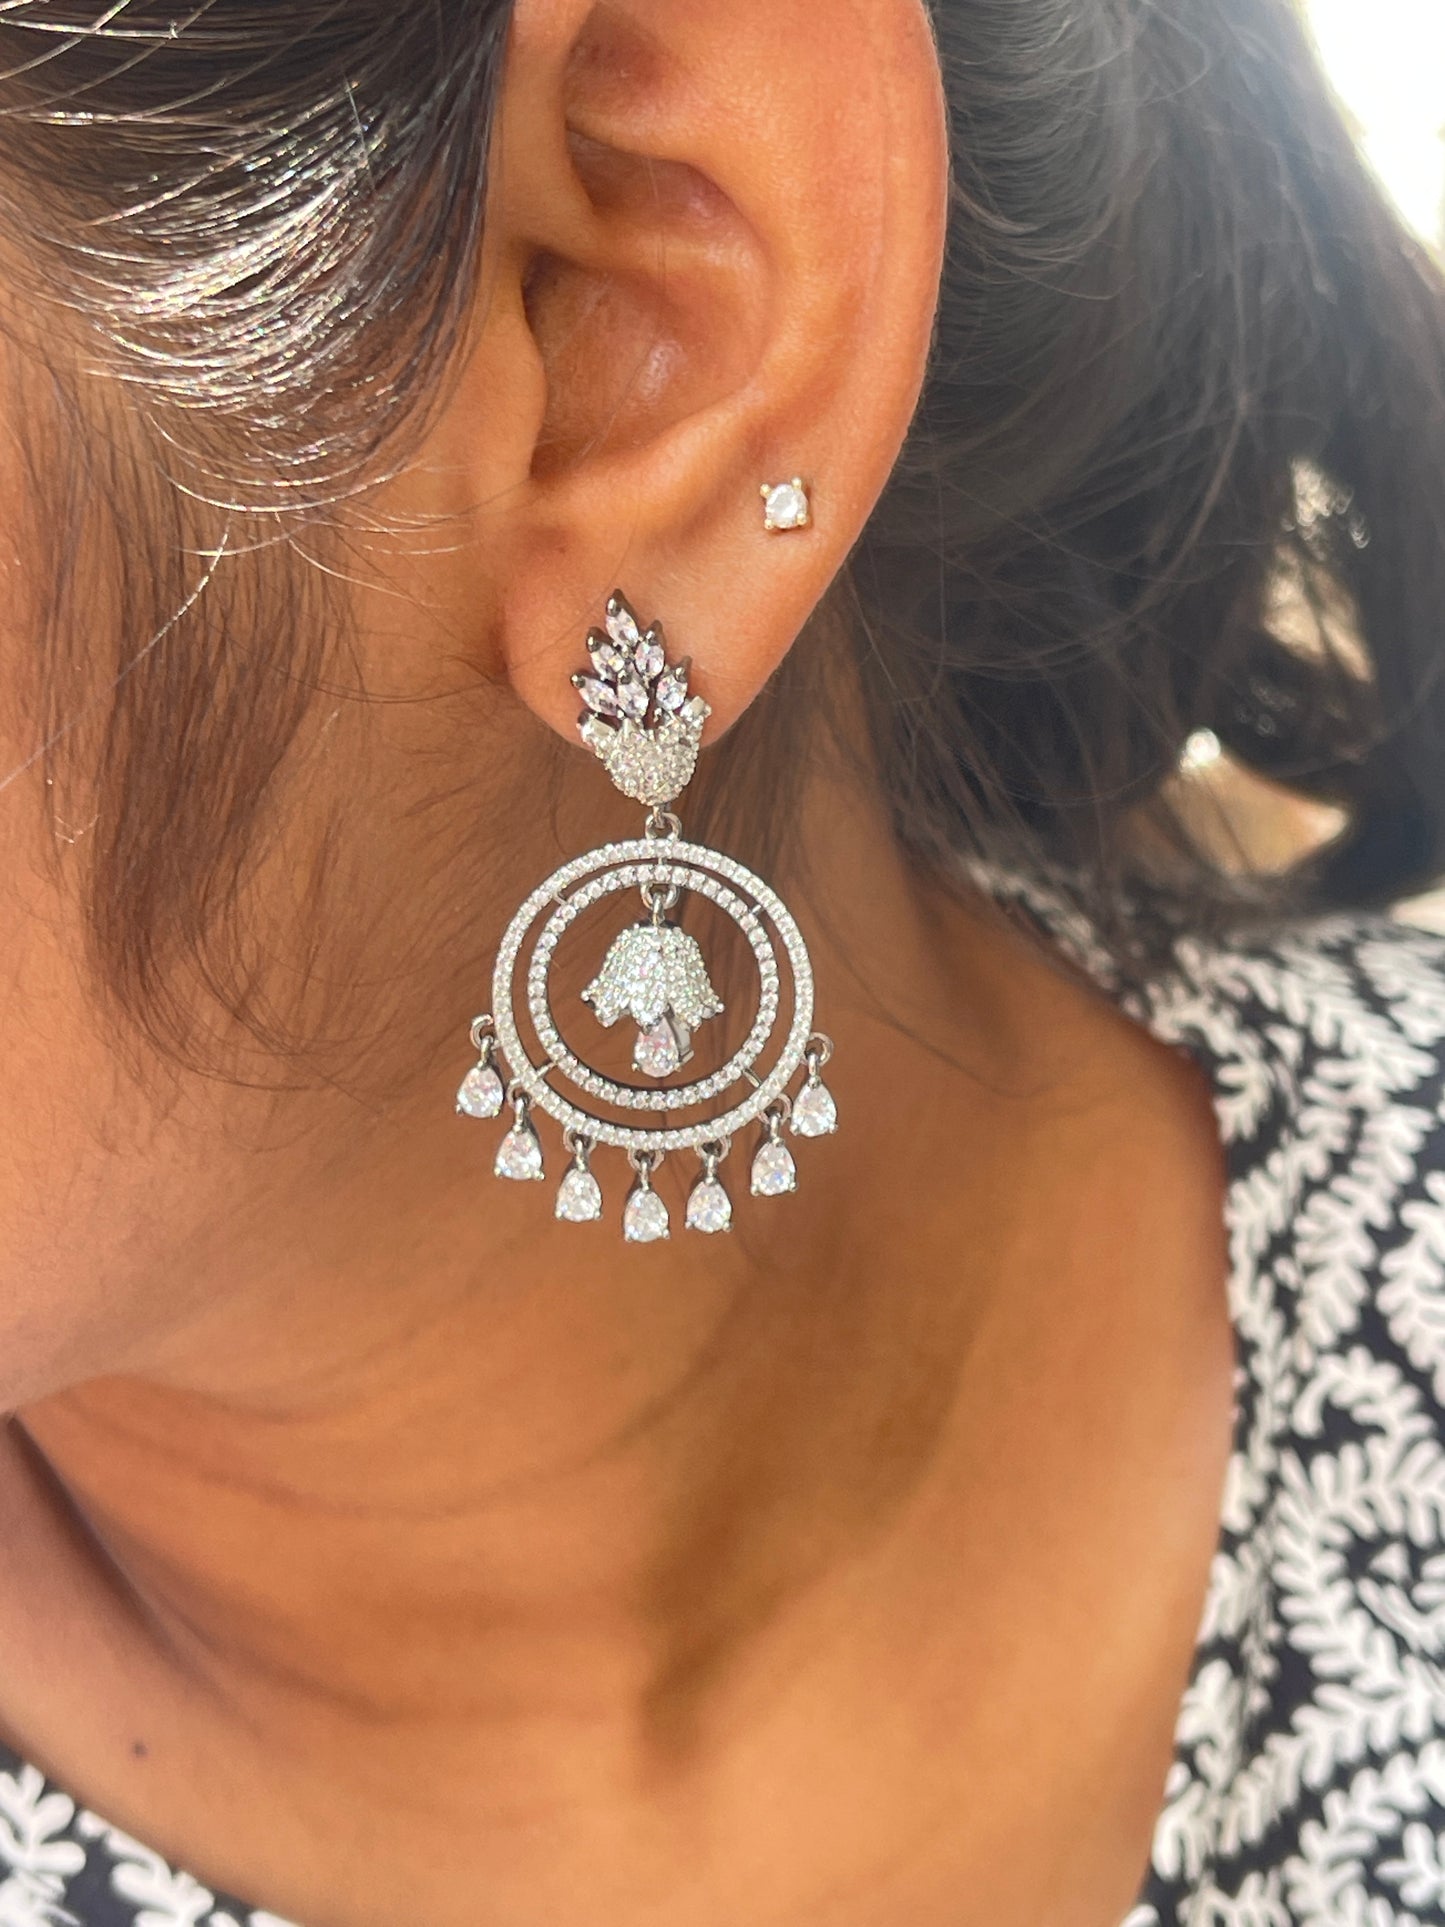 Zircon chandbali bell earrings